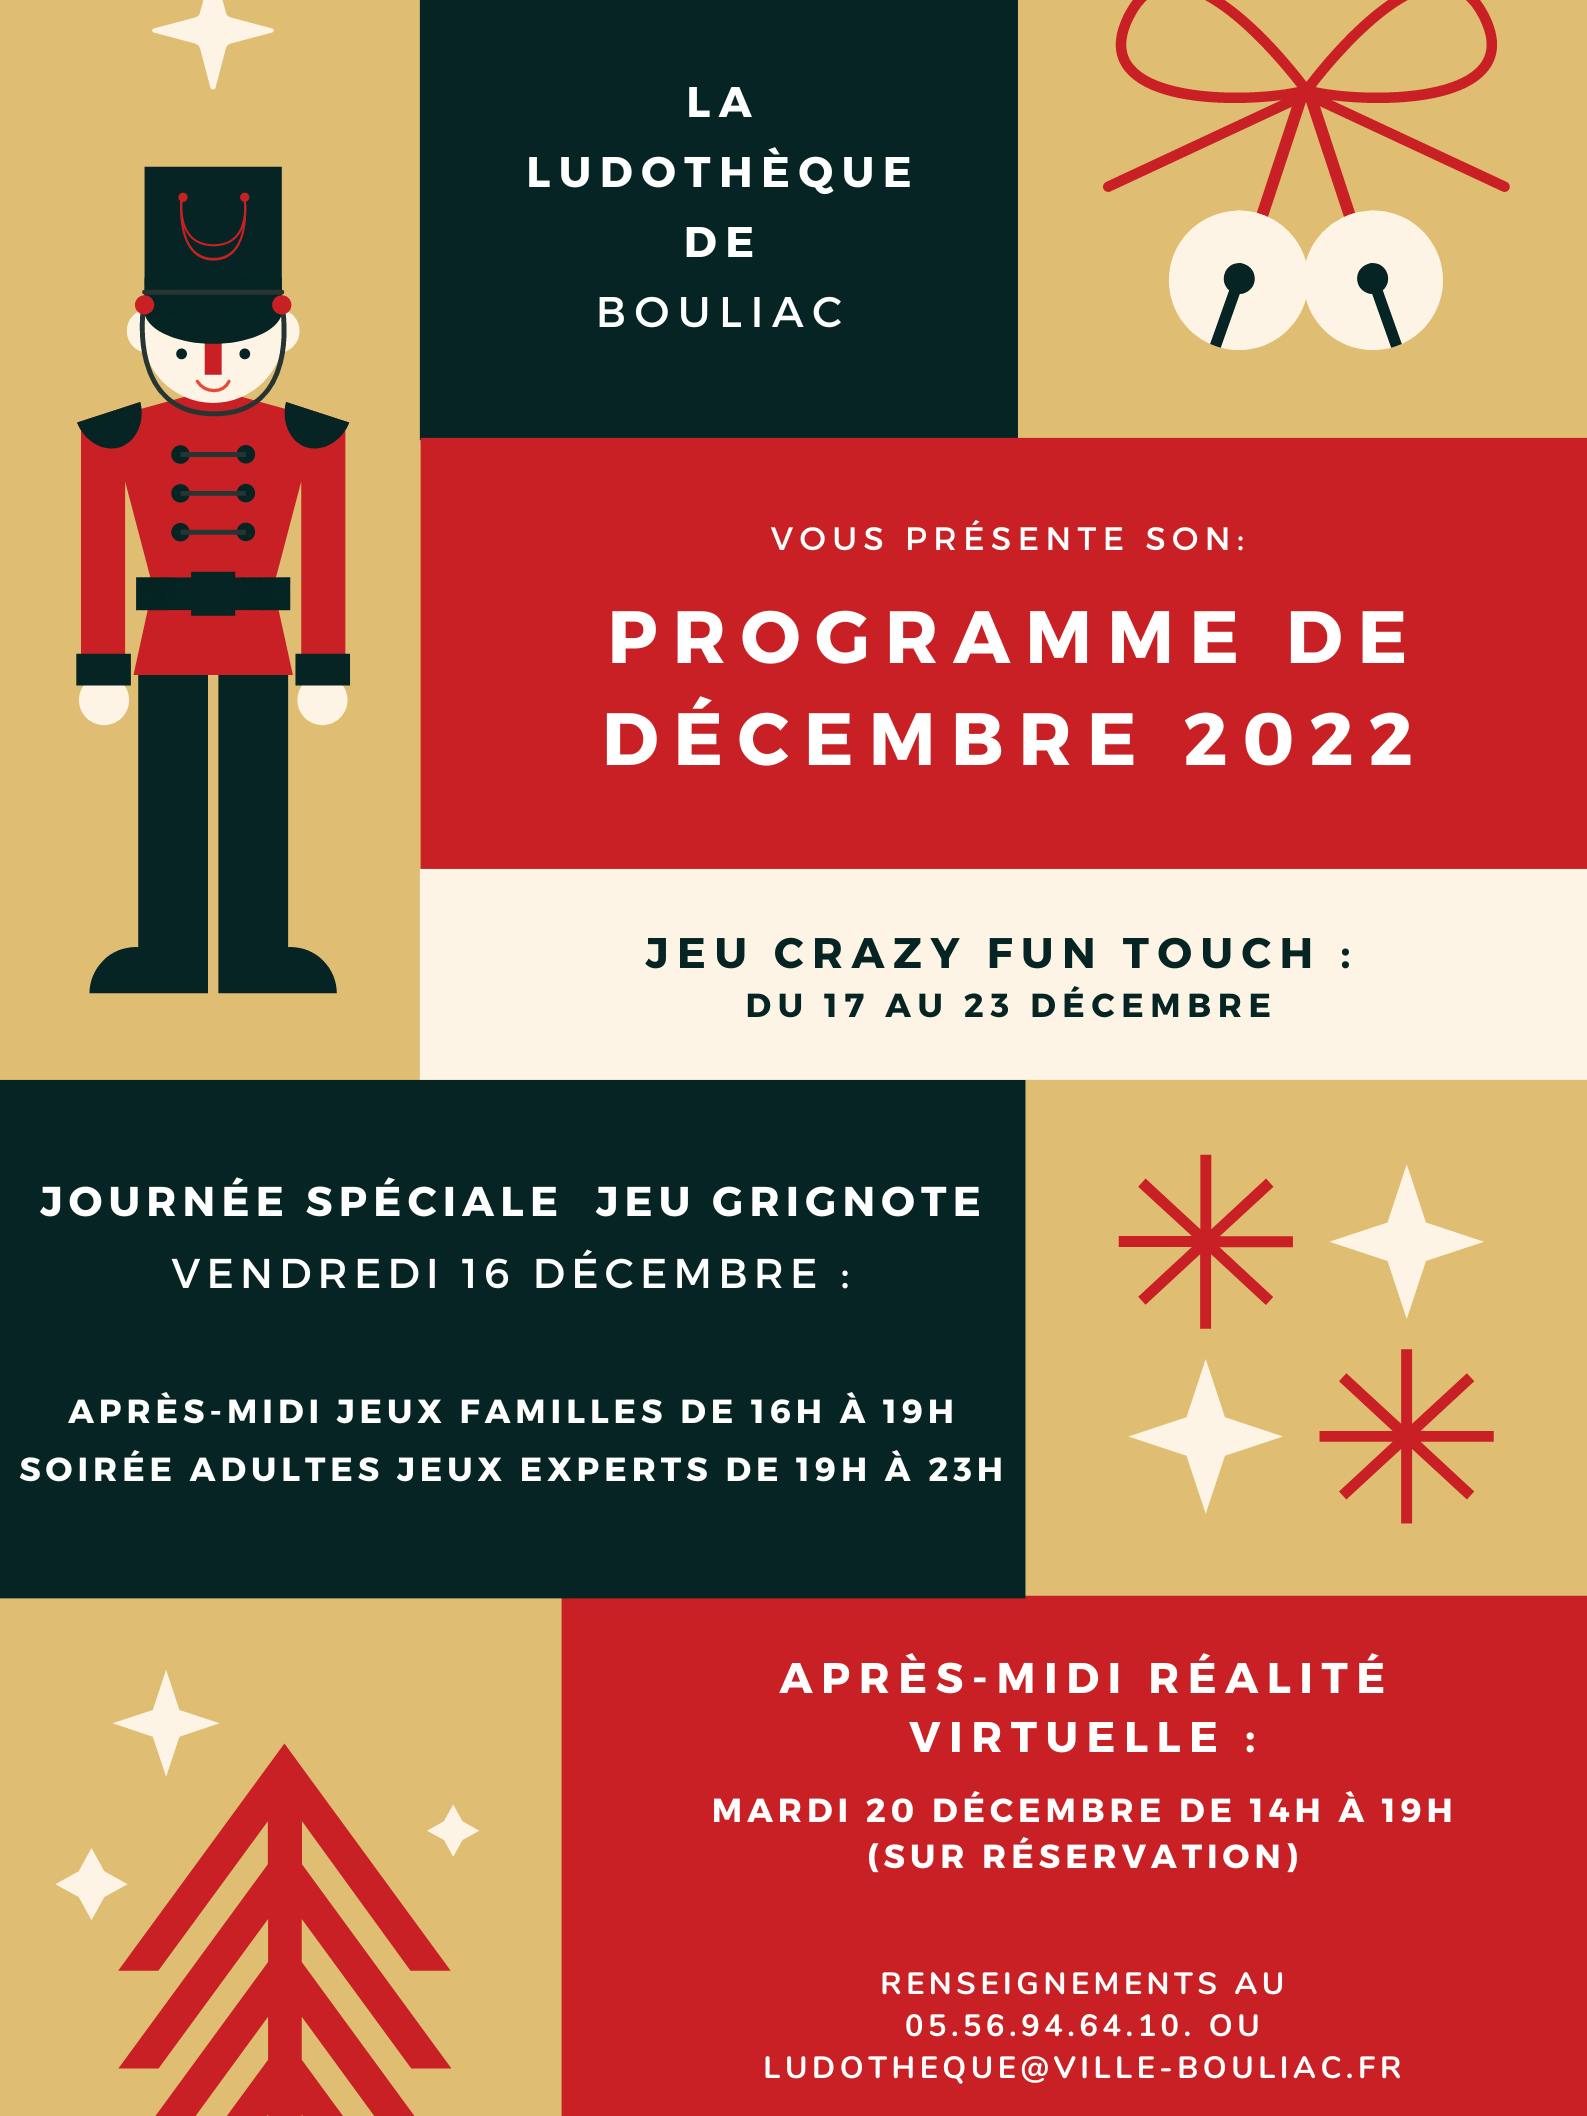 Ludothèque de Bouliac : Programme de décembre